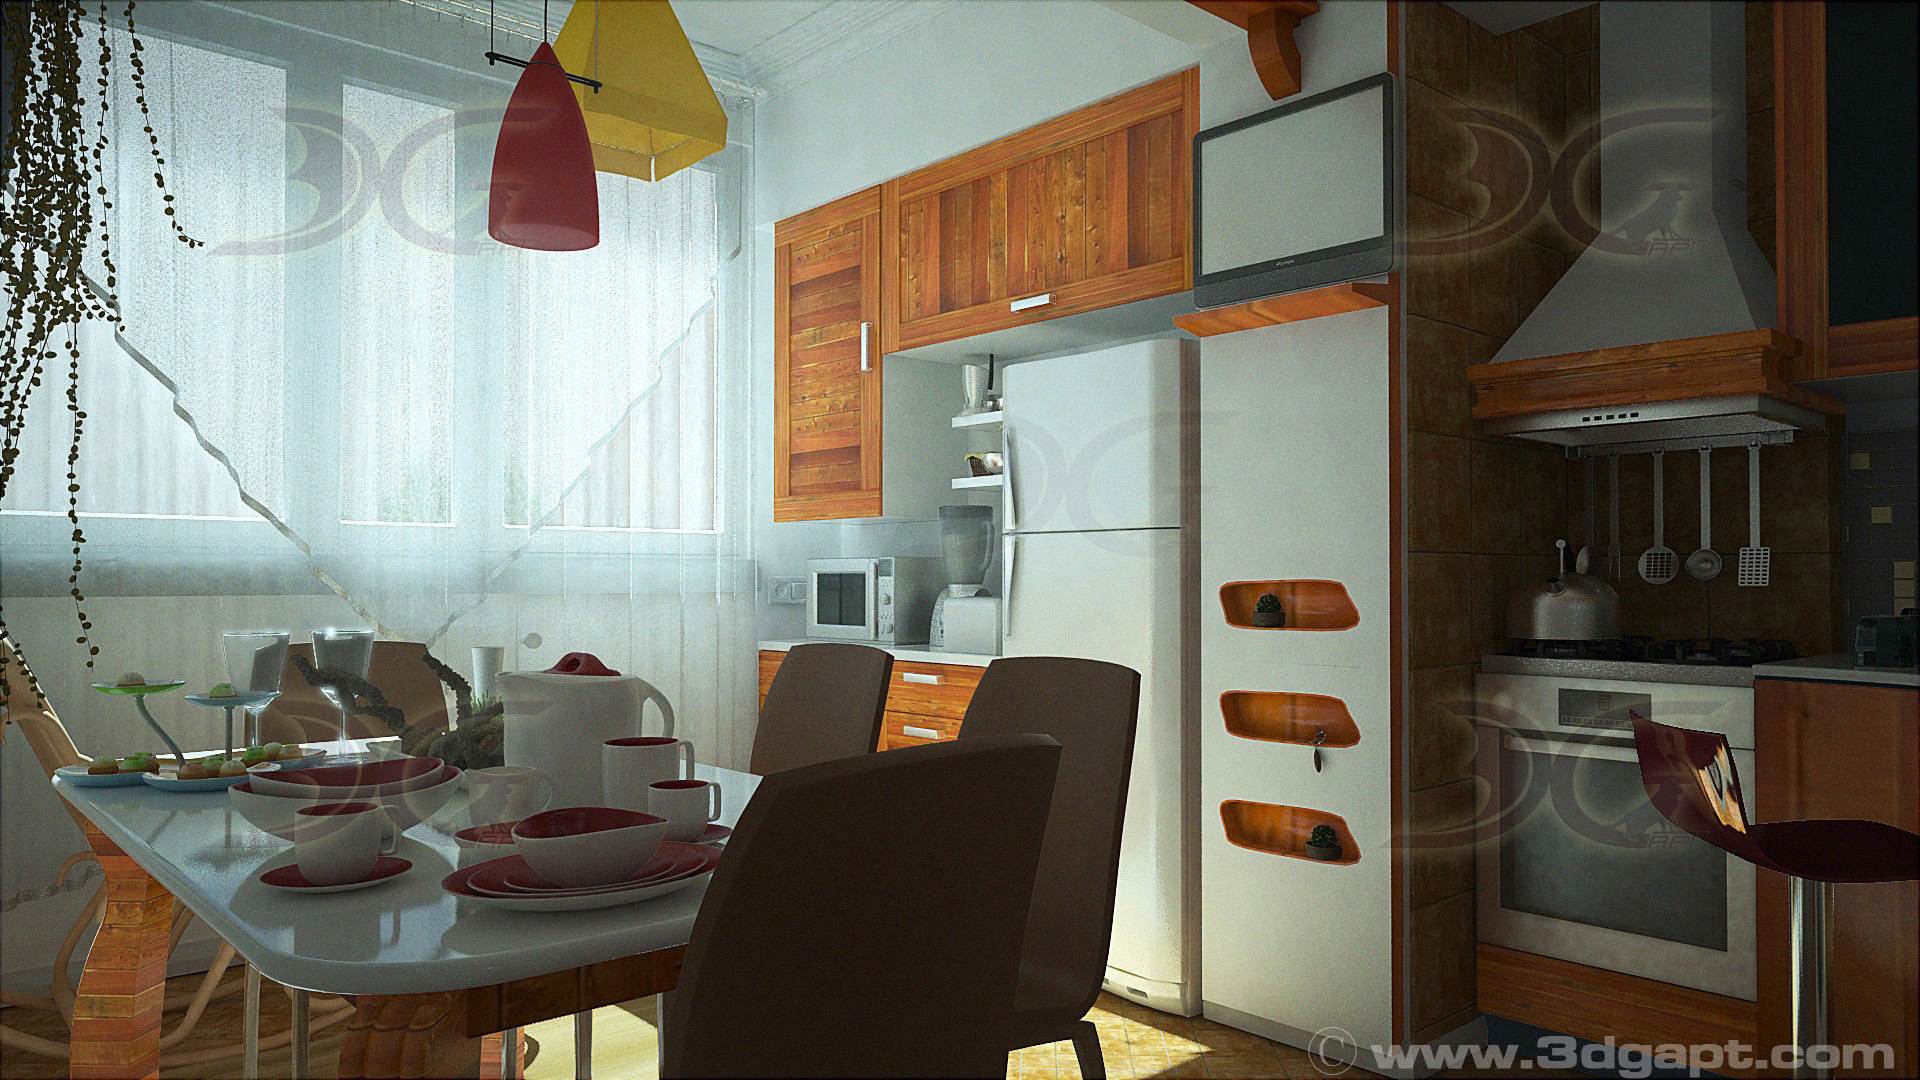 architecture interior kitchen-3versions 20